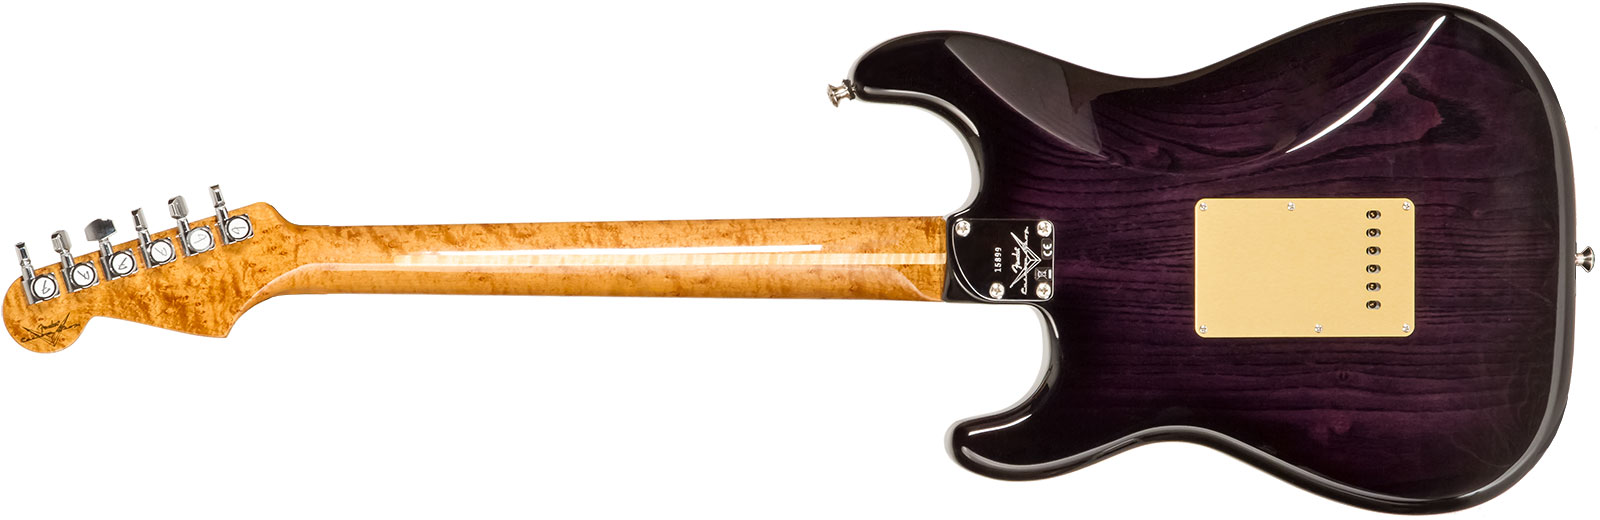 Fender Custom Shop Strat American Custom 3s Trem Mn #xn15899 - Nos Ebony Transparent - Elektrische gitaar in Str-vorm - Variation 1